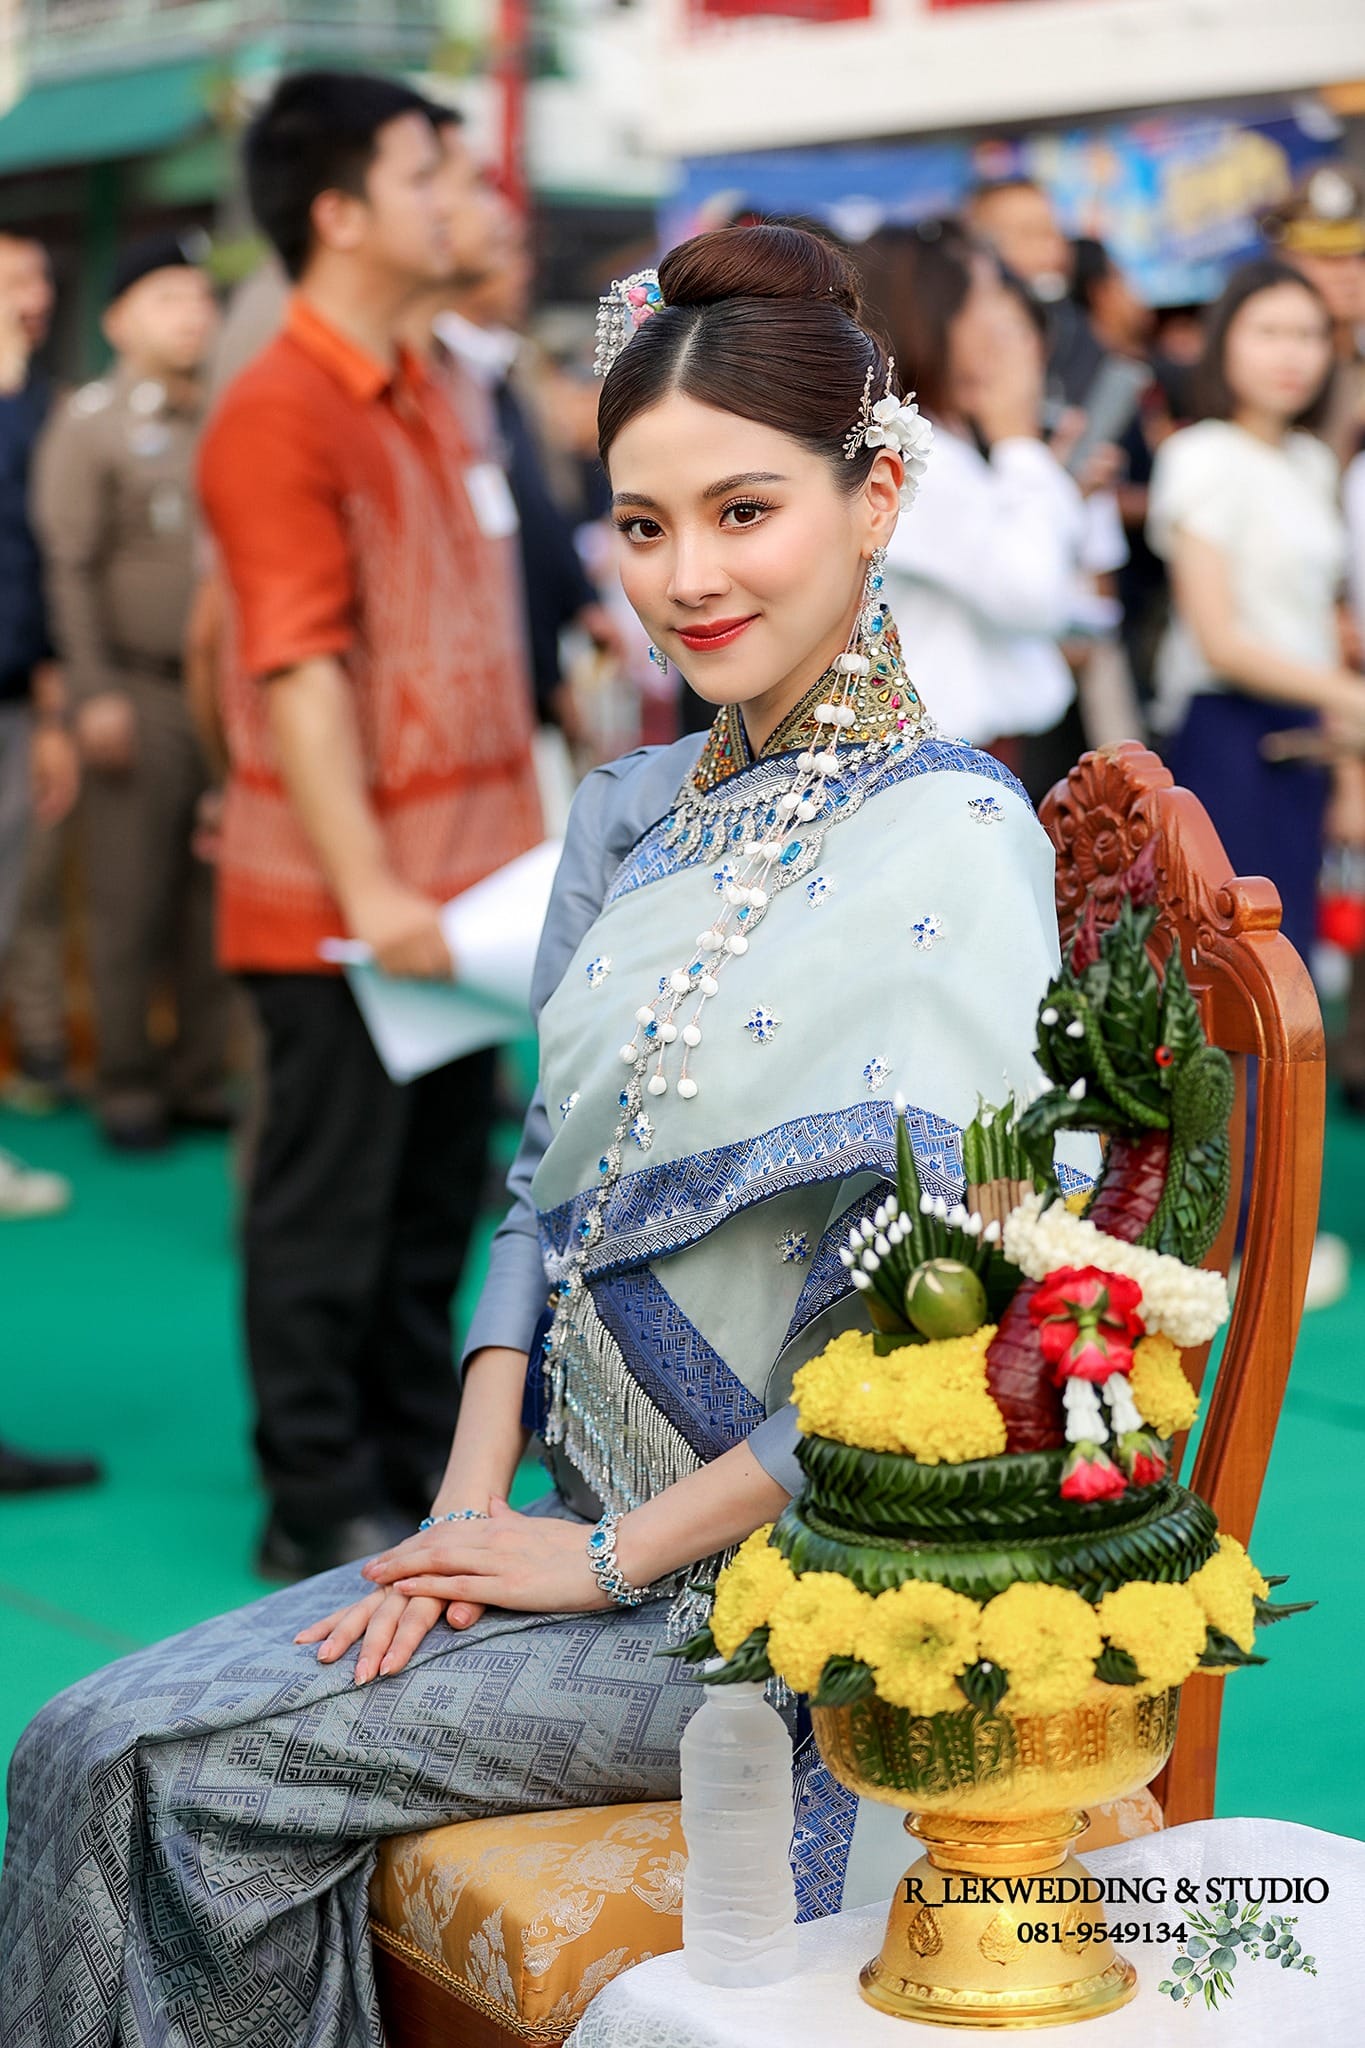 Baifern Pimchanok đẹp xuất thần khi diện trang phục truyền thống, sắc vóc qua cam thường càng nhìn càng mê - Ảnh 5.